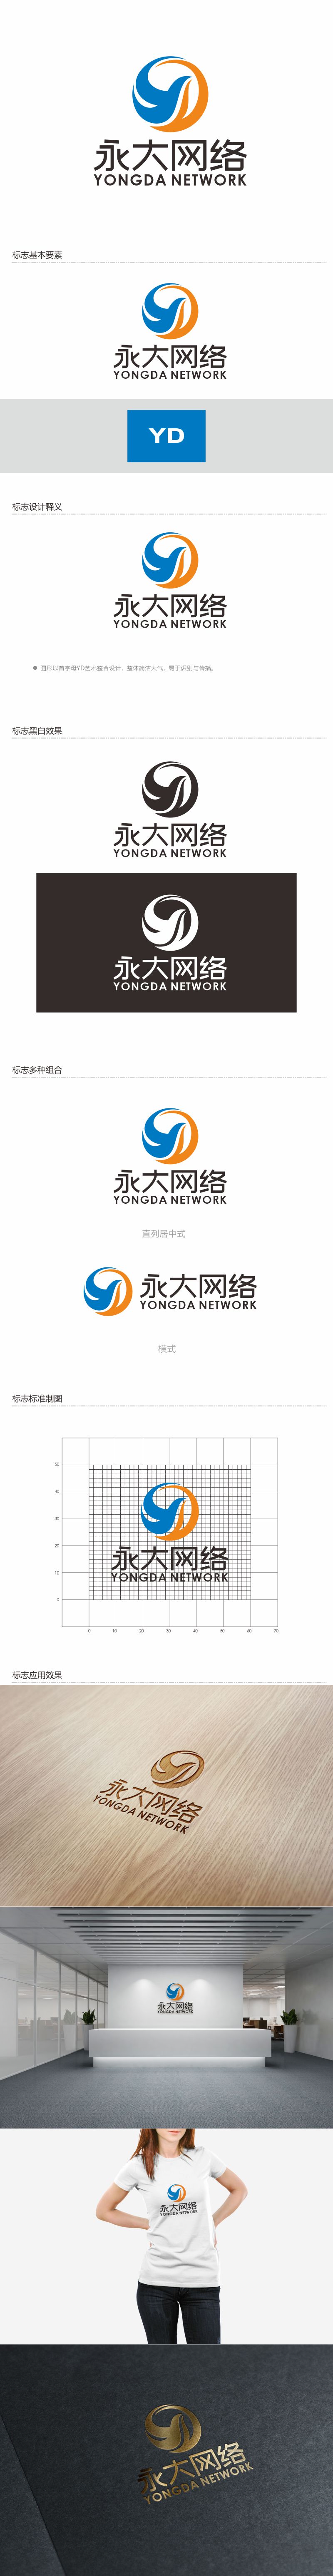 何嘉健的永大网络logo设计